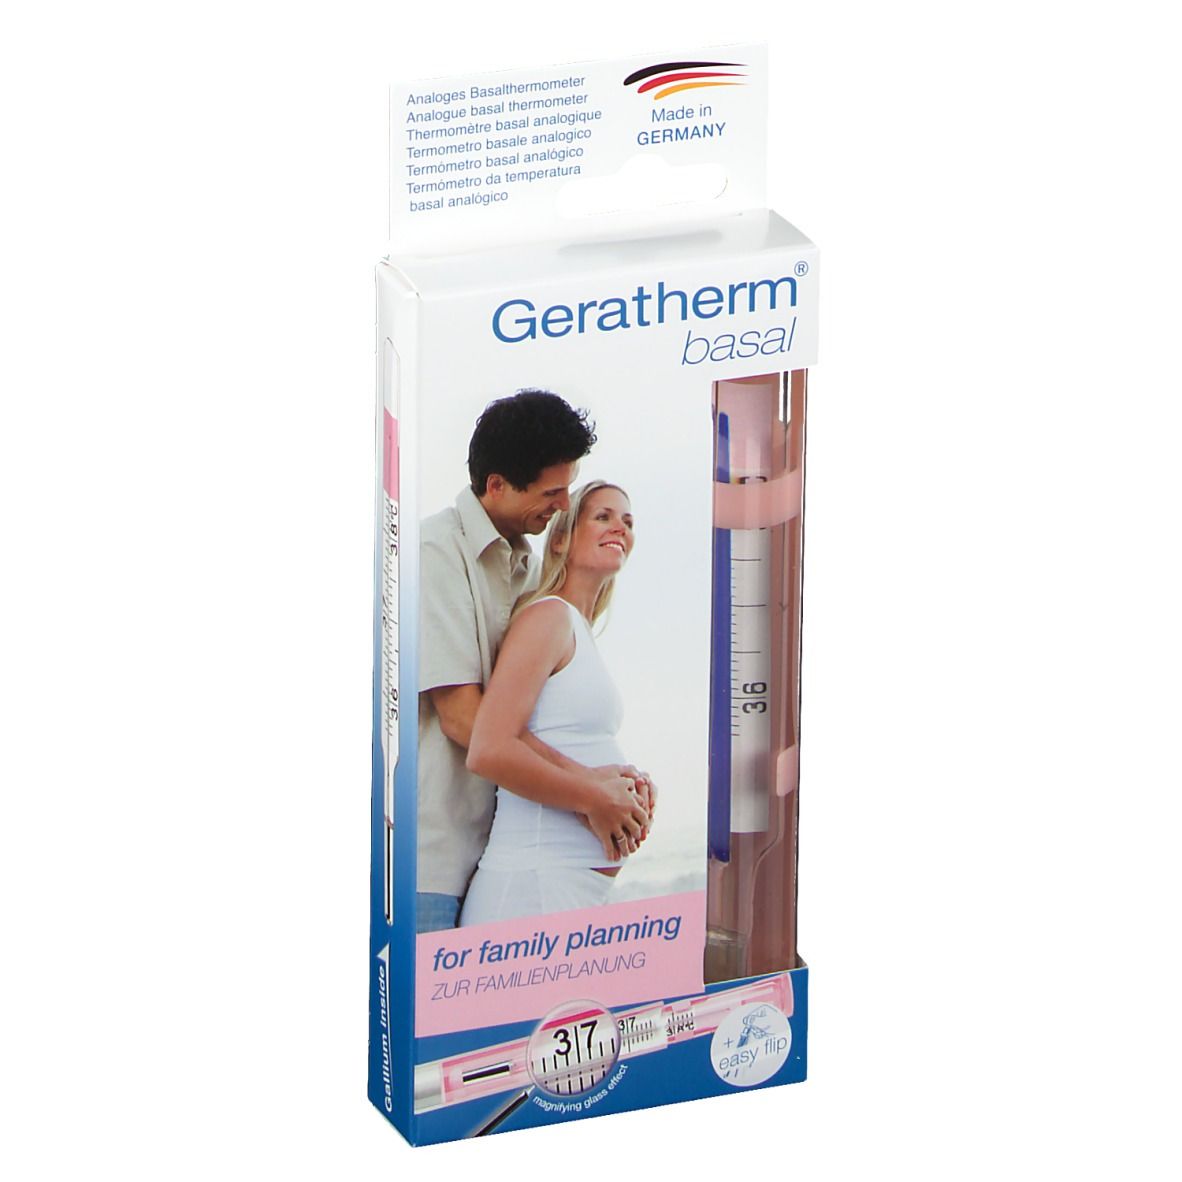 Image of Geratherm® basal